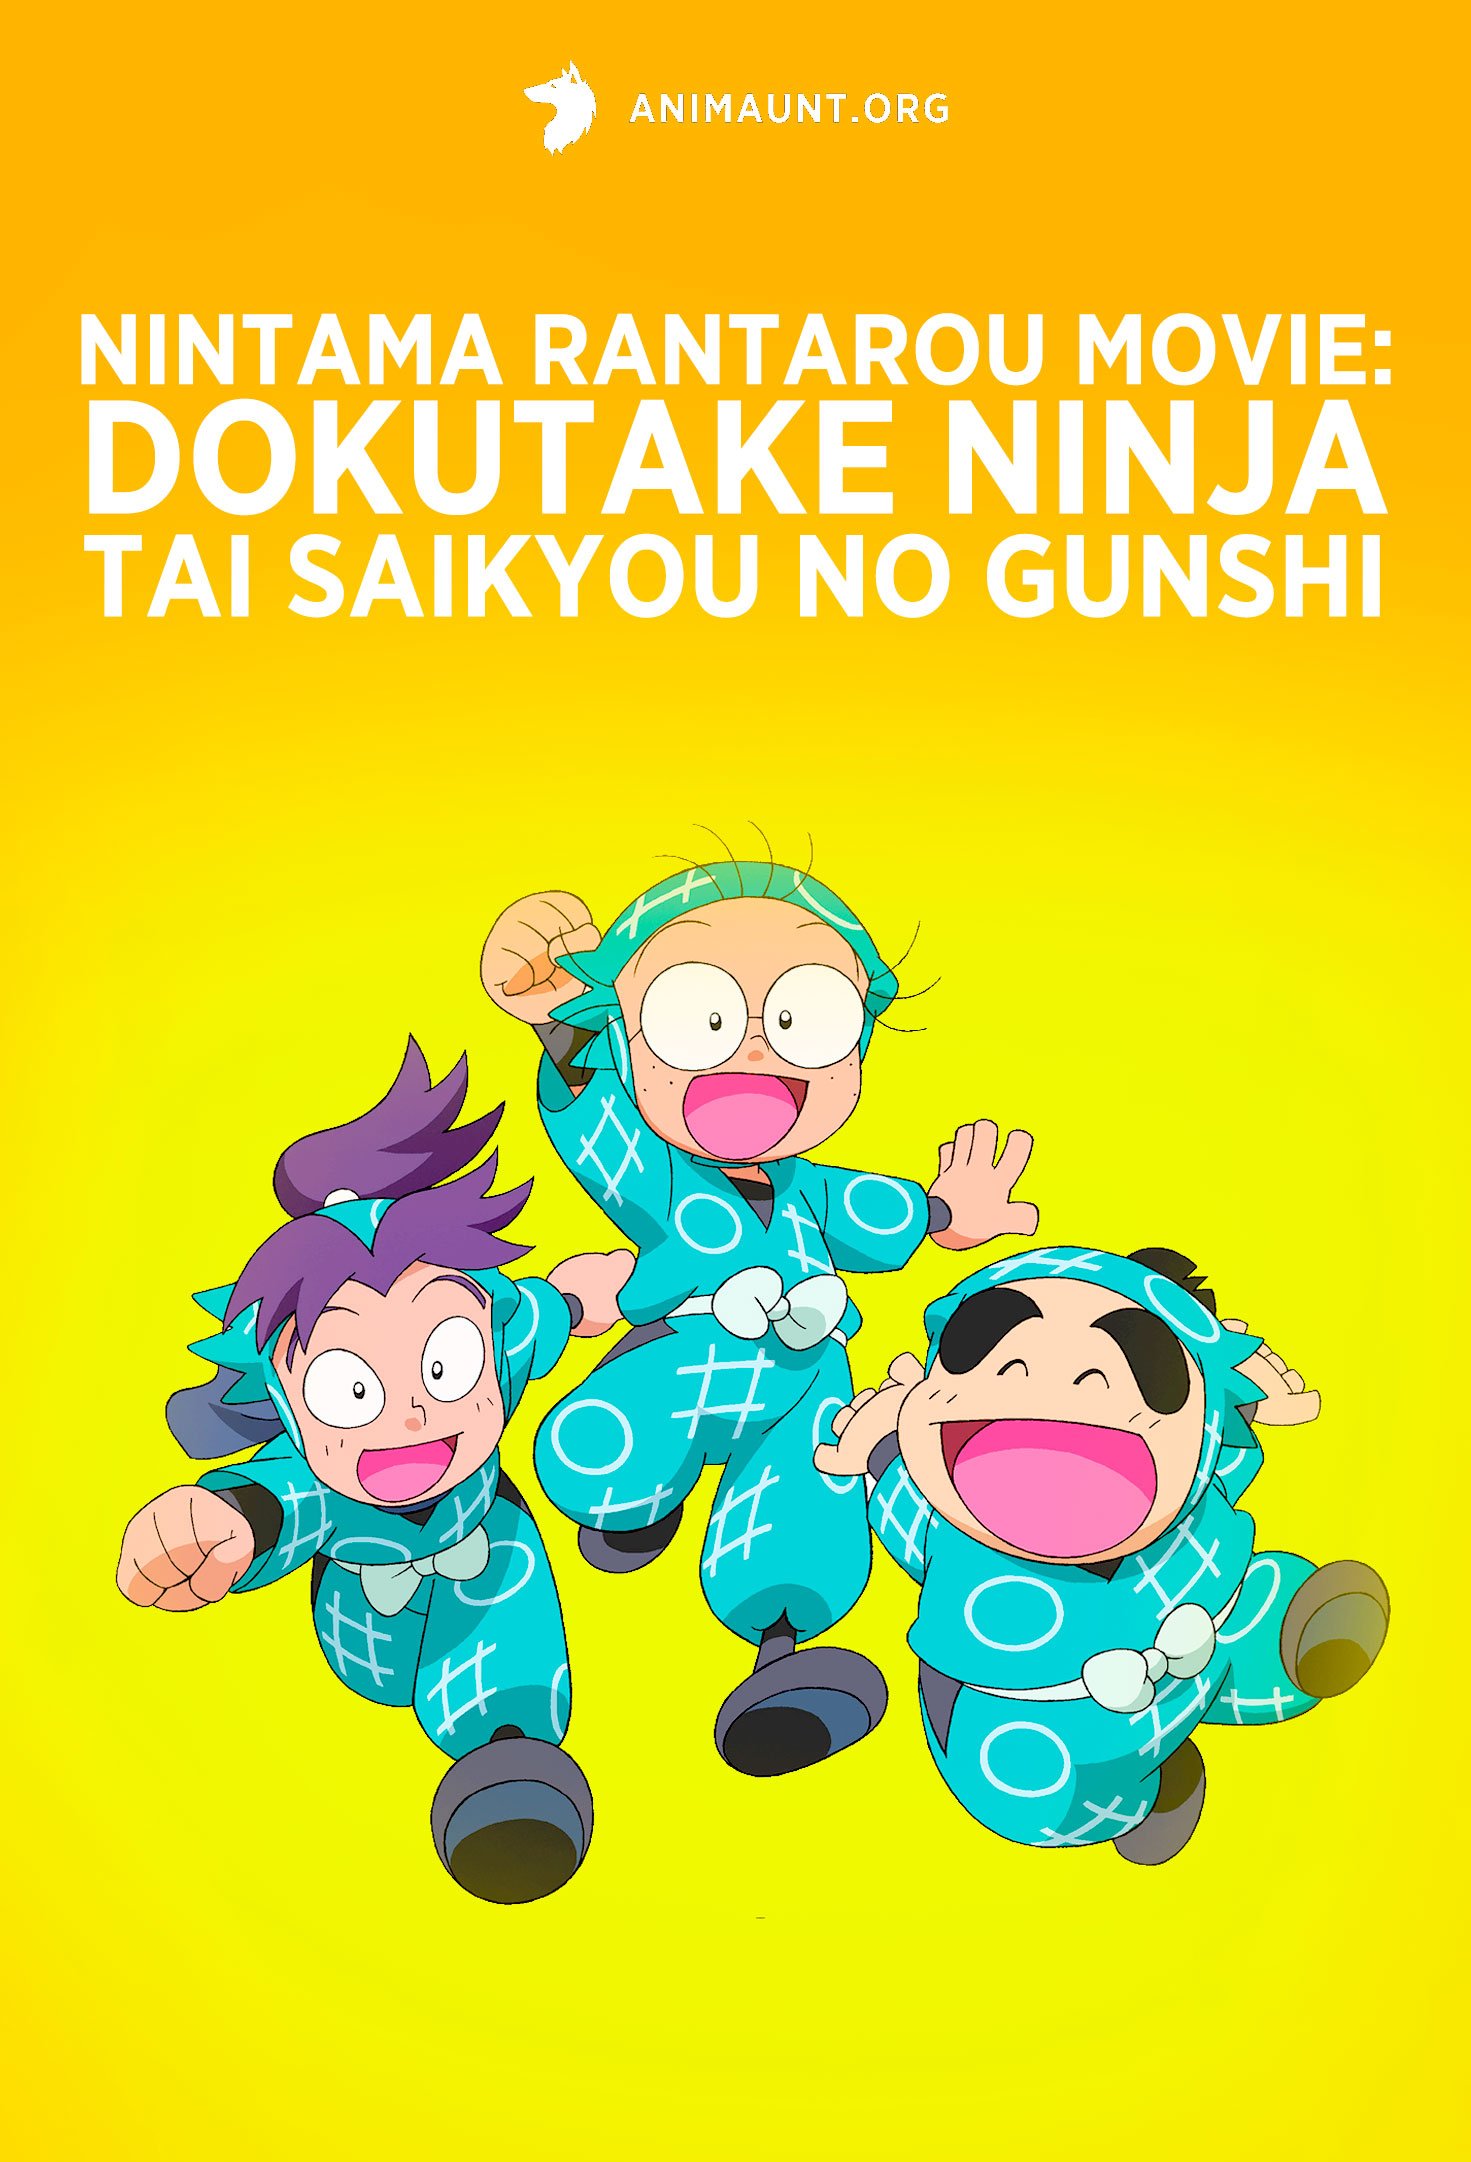 Nintama Rantarou Movie: Dokutake Ninja Tai Saikyou no Gunshi